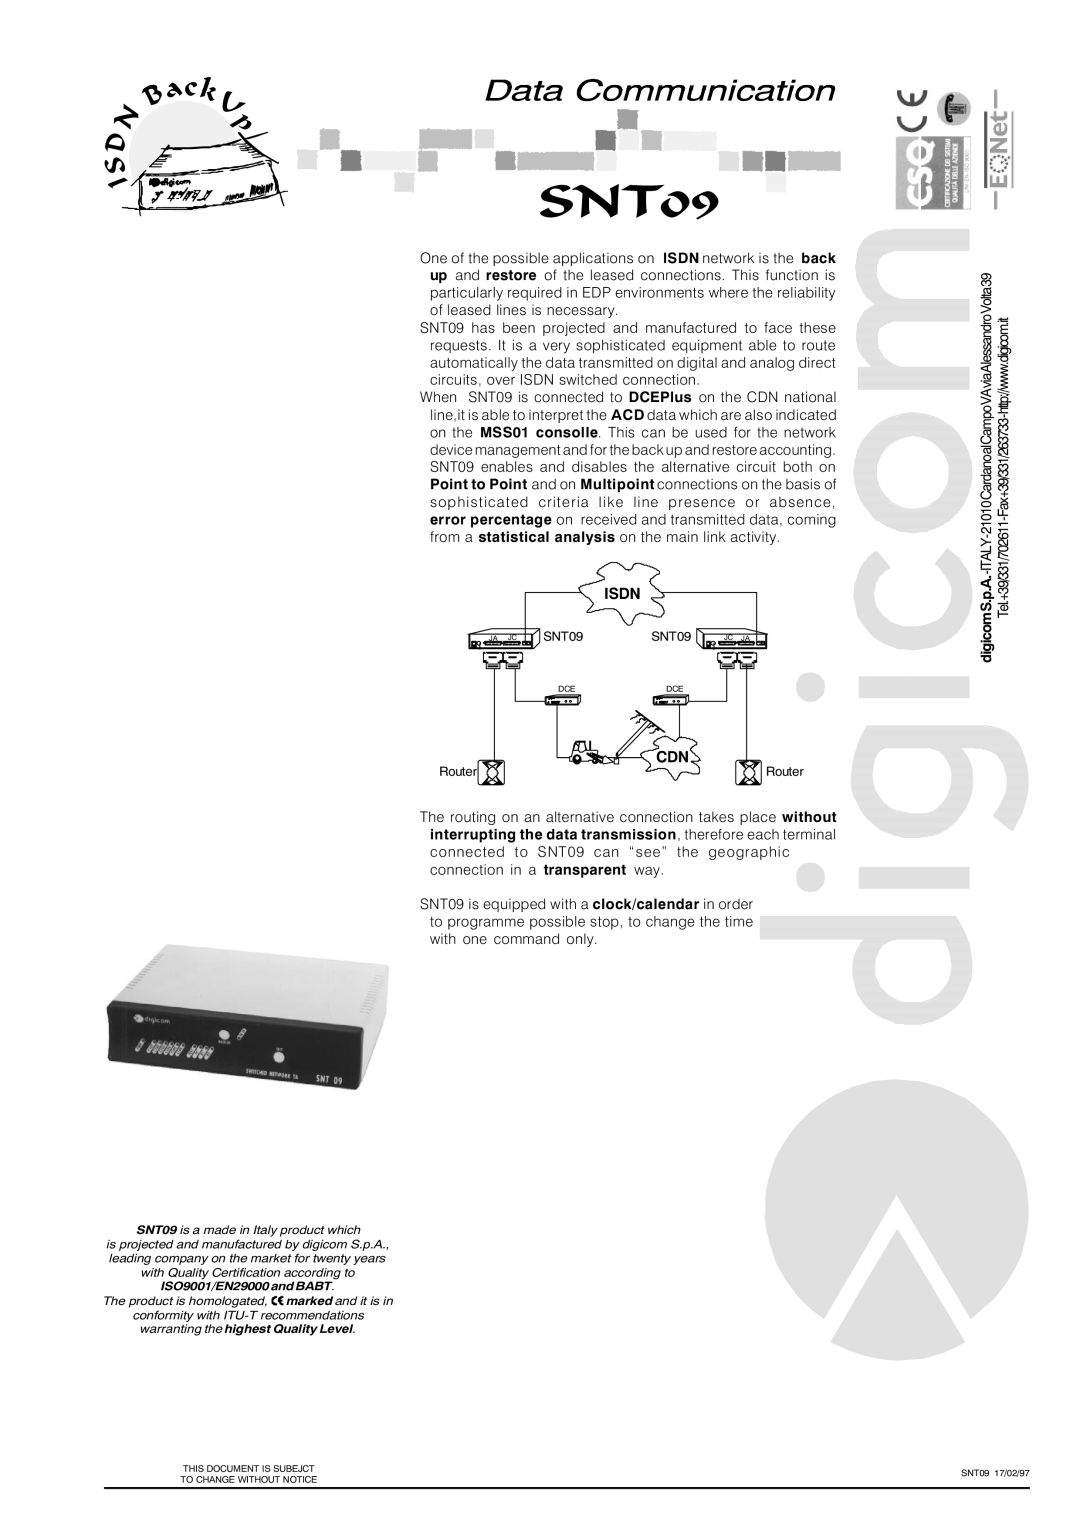 Digicom SNT09 manual Data Communication 